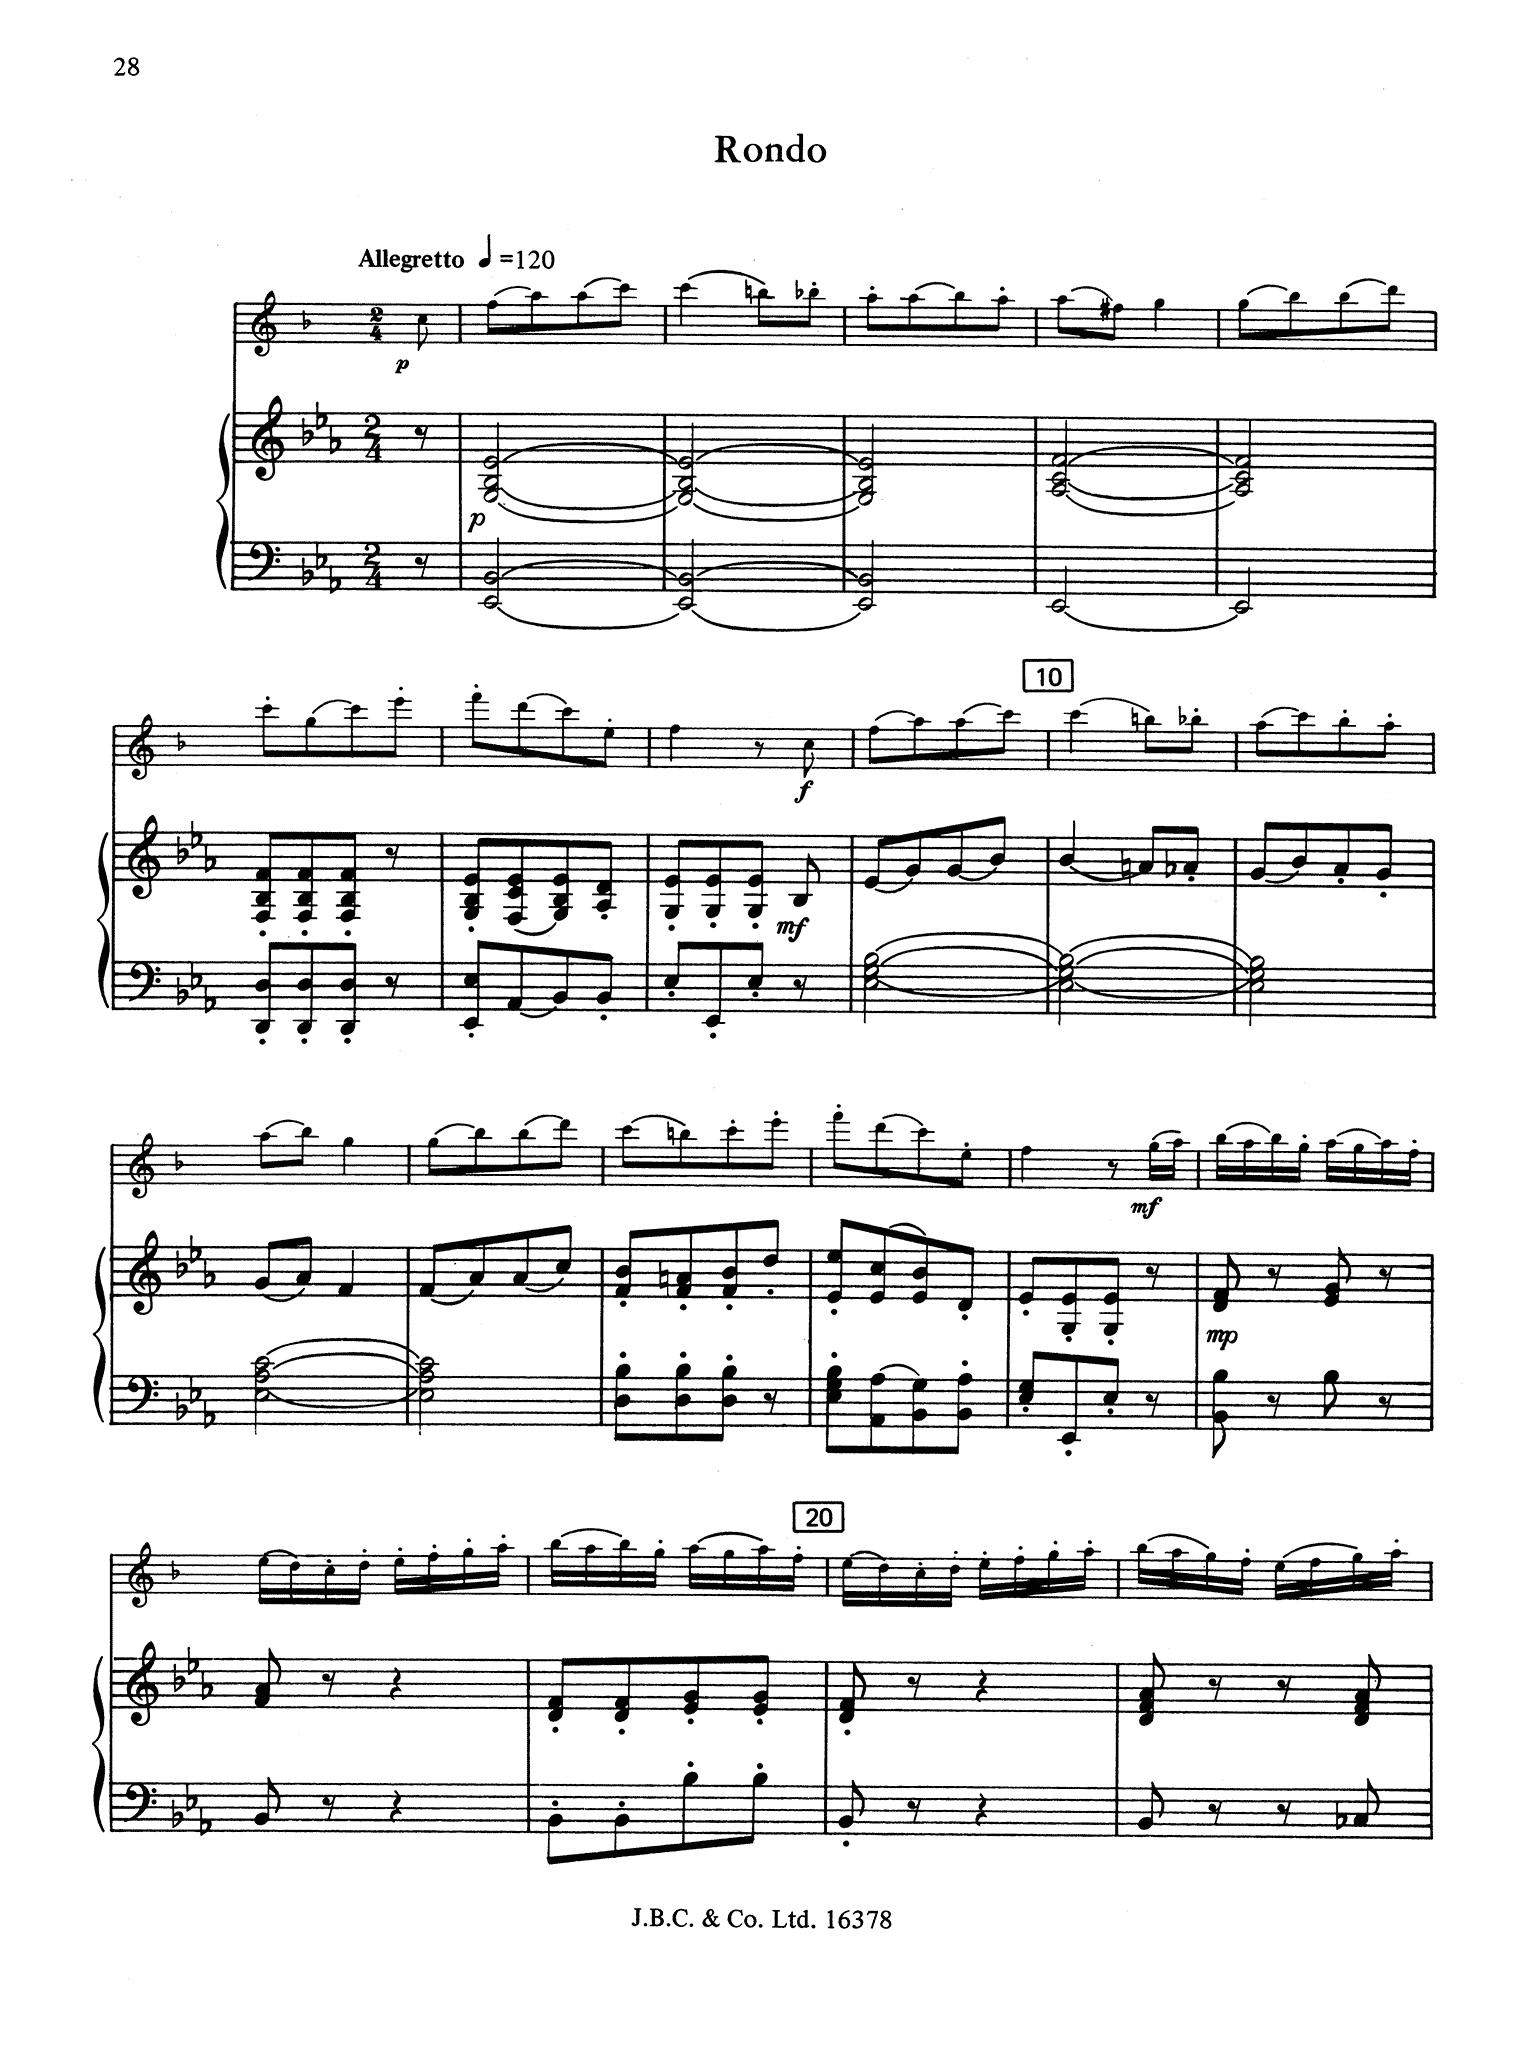 Clarinet Concerto No. 3 in E-Flat Major - Movement 3